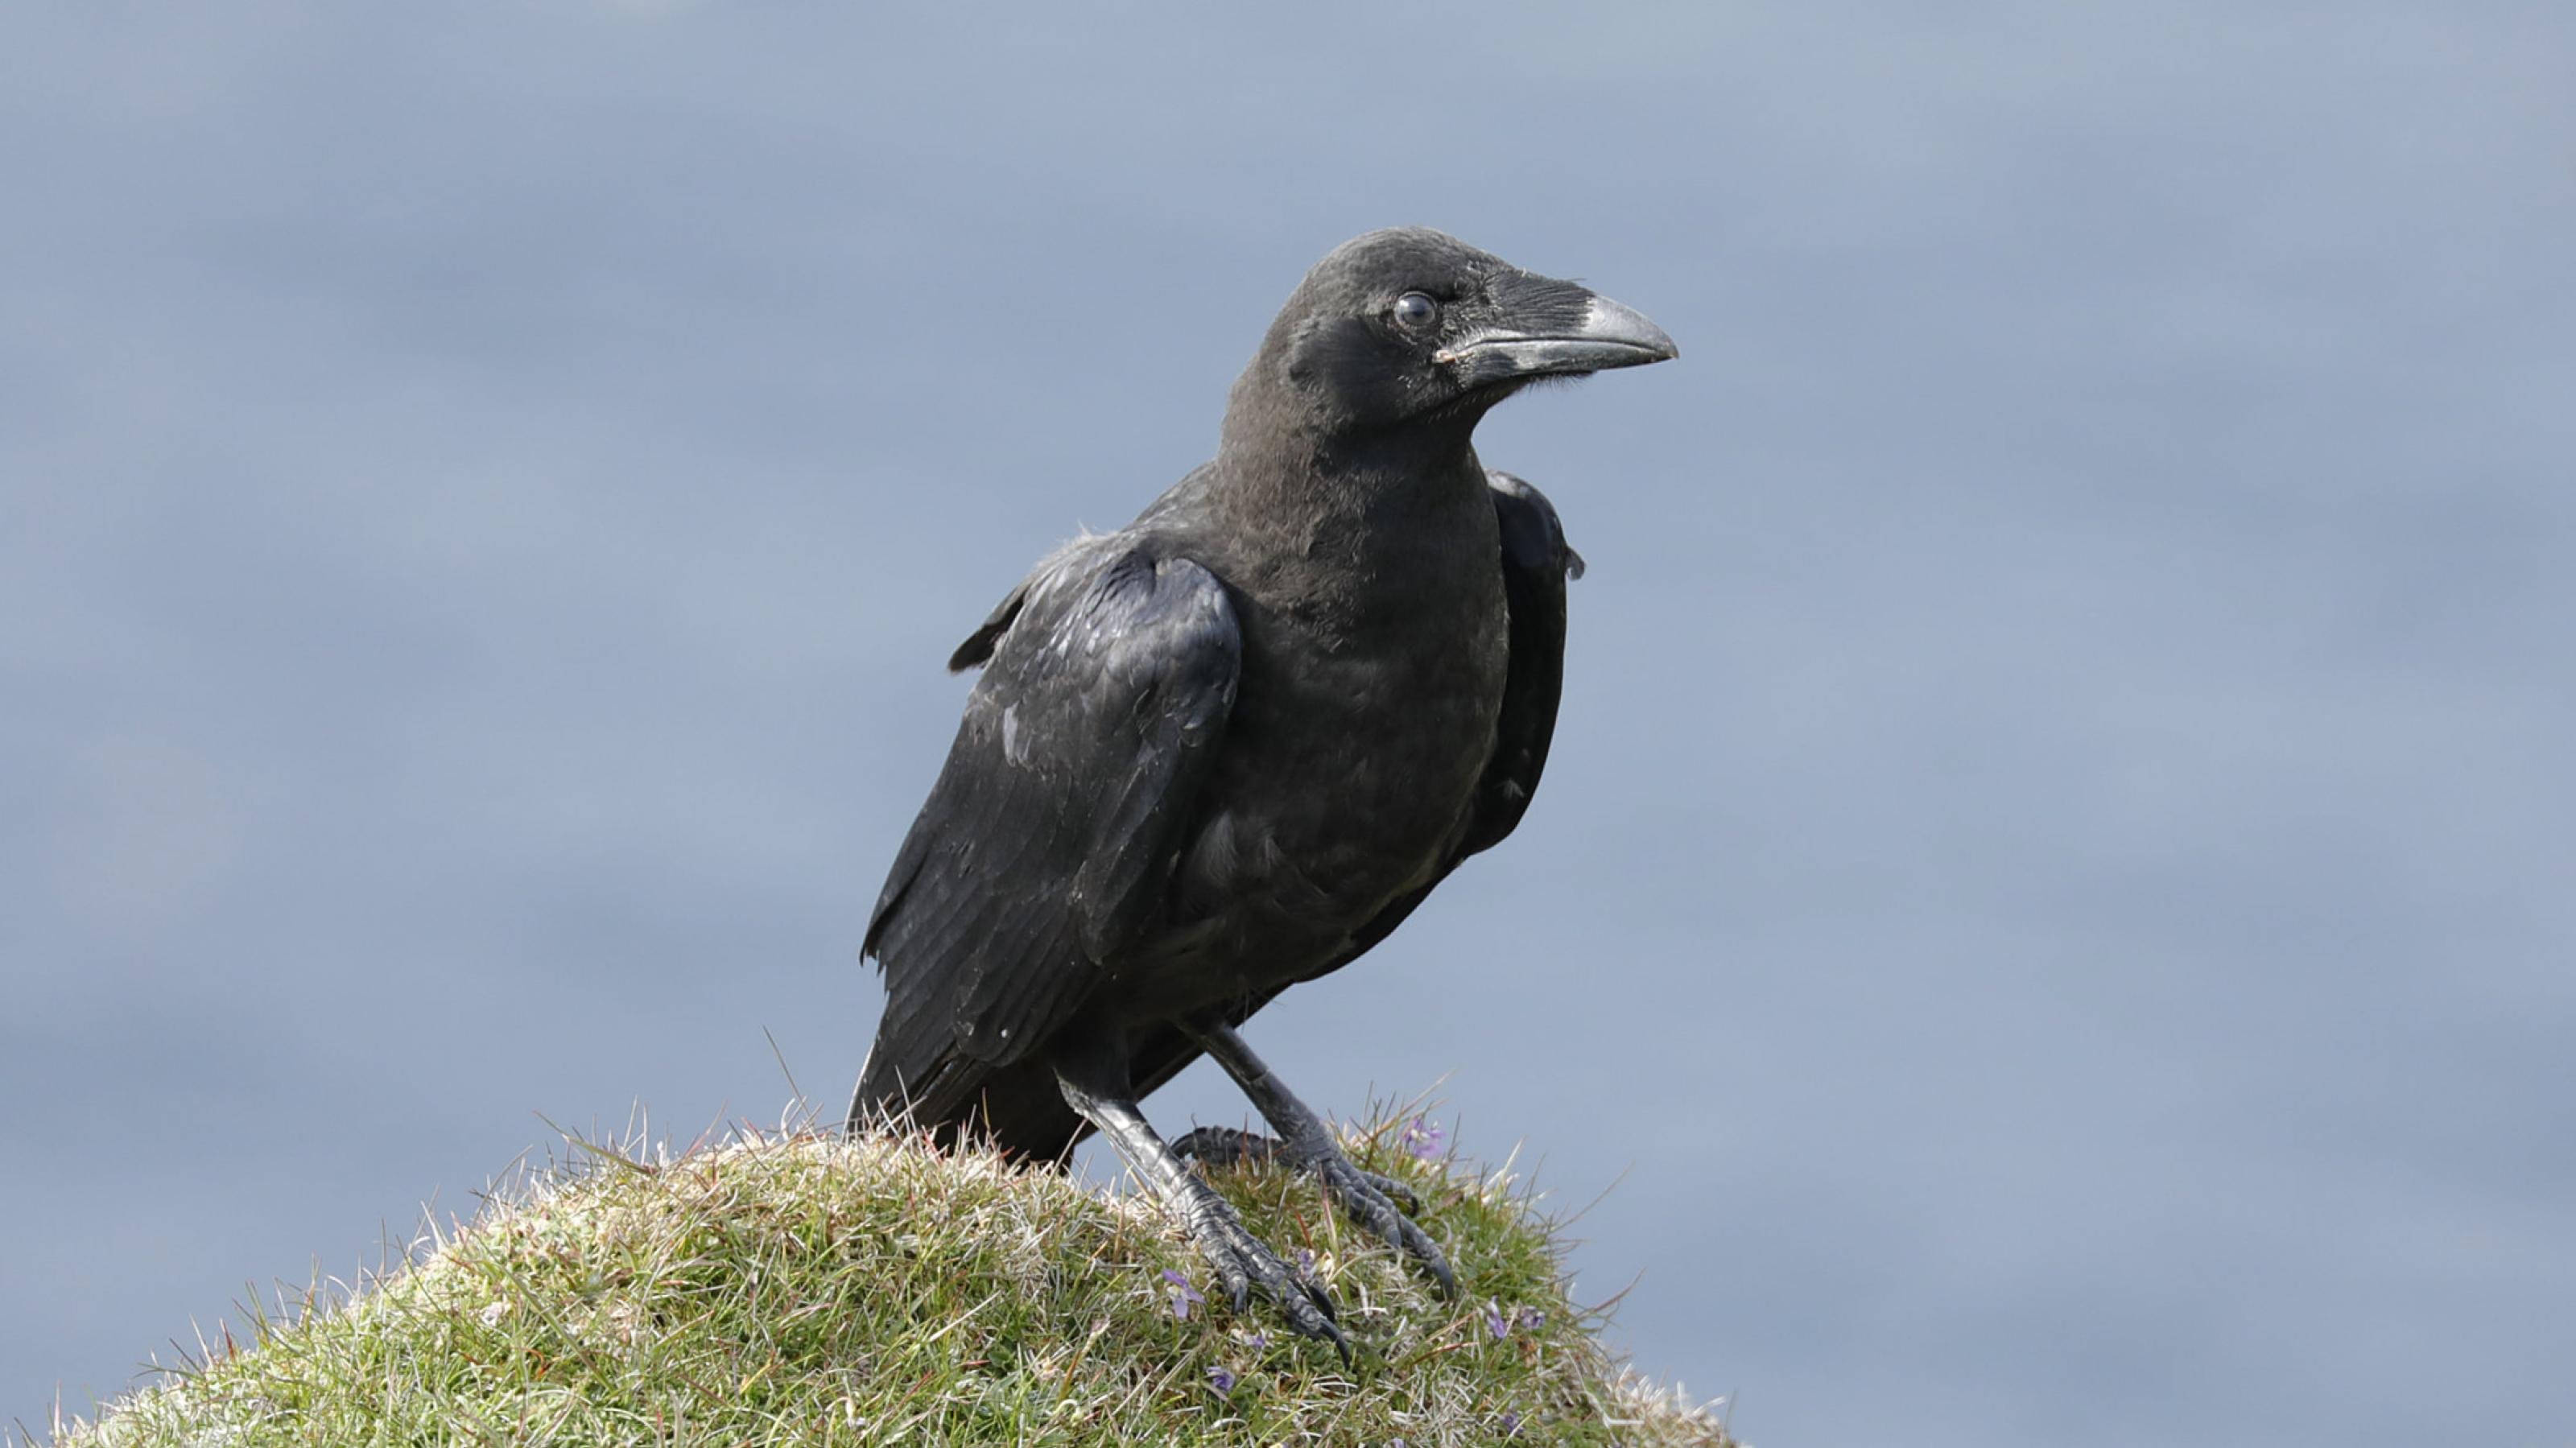 Ein schwarz-gefiederter Vogel mit großem Schnabel sitzt auf einem Hügel mit kurzem Gras und blickt in die Kamera.